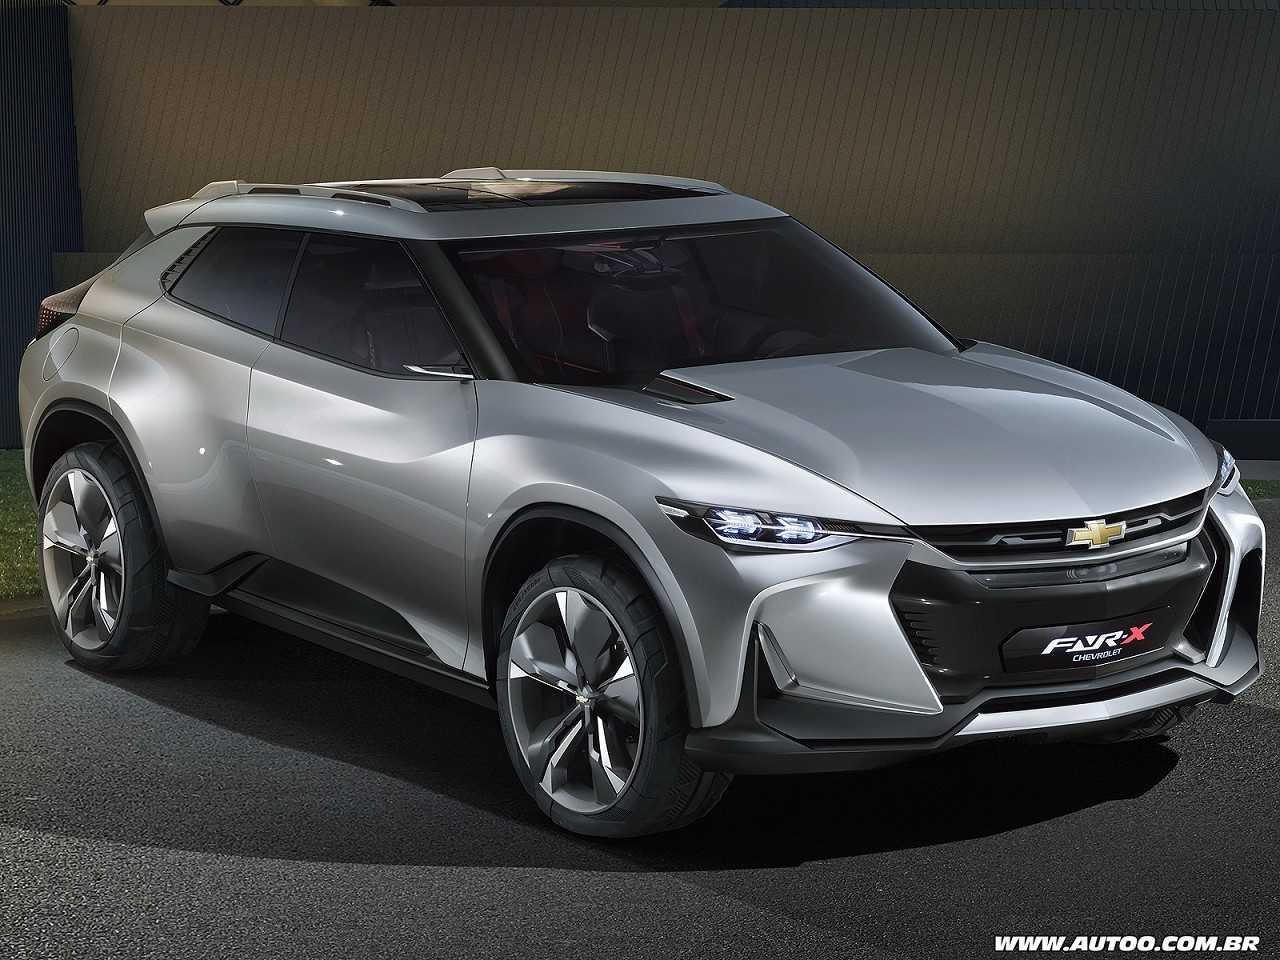 Acima o conceito FNR-X Concept revelado pela Chevrolet na China em 2017